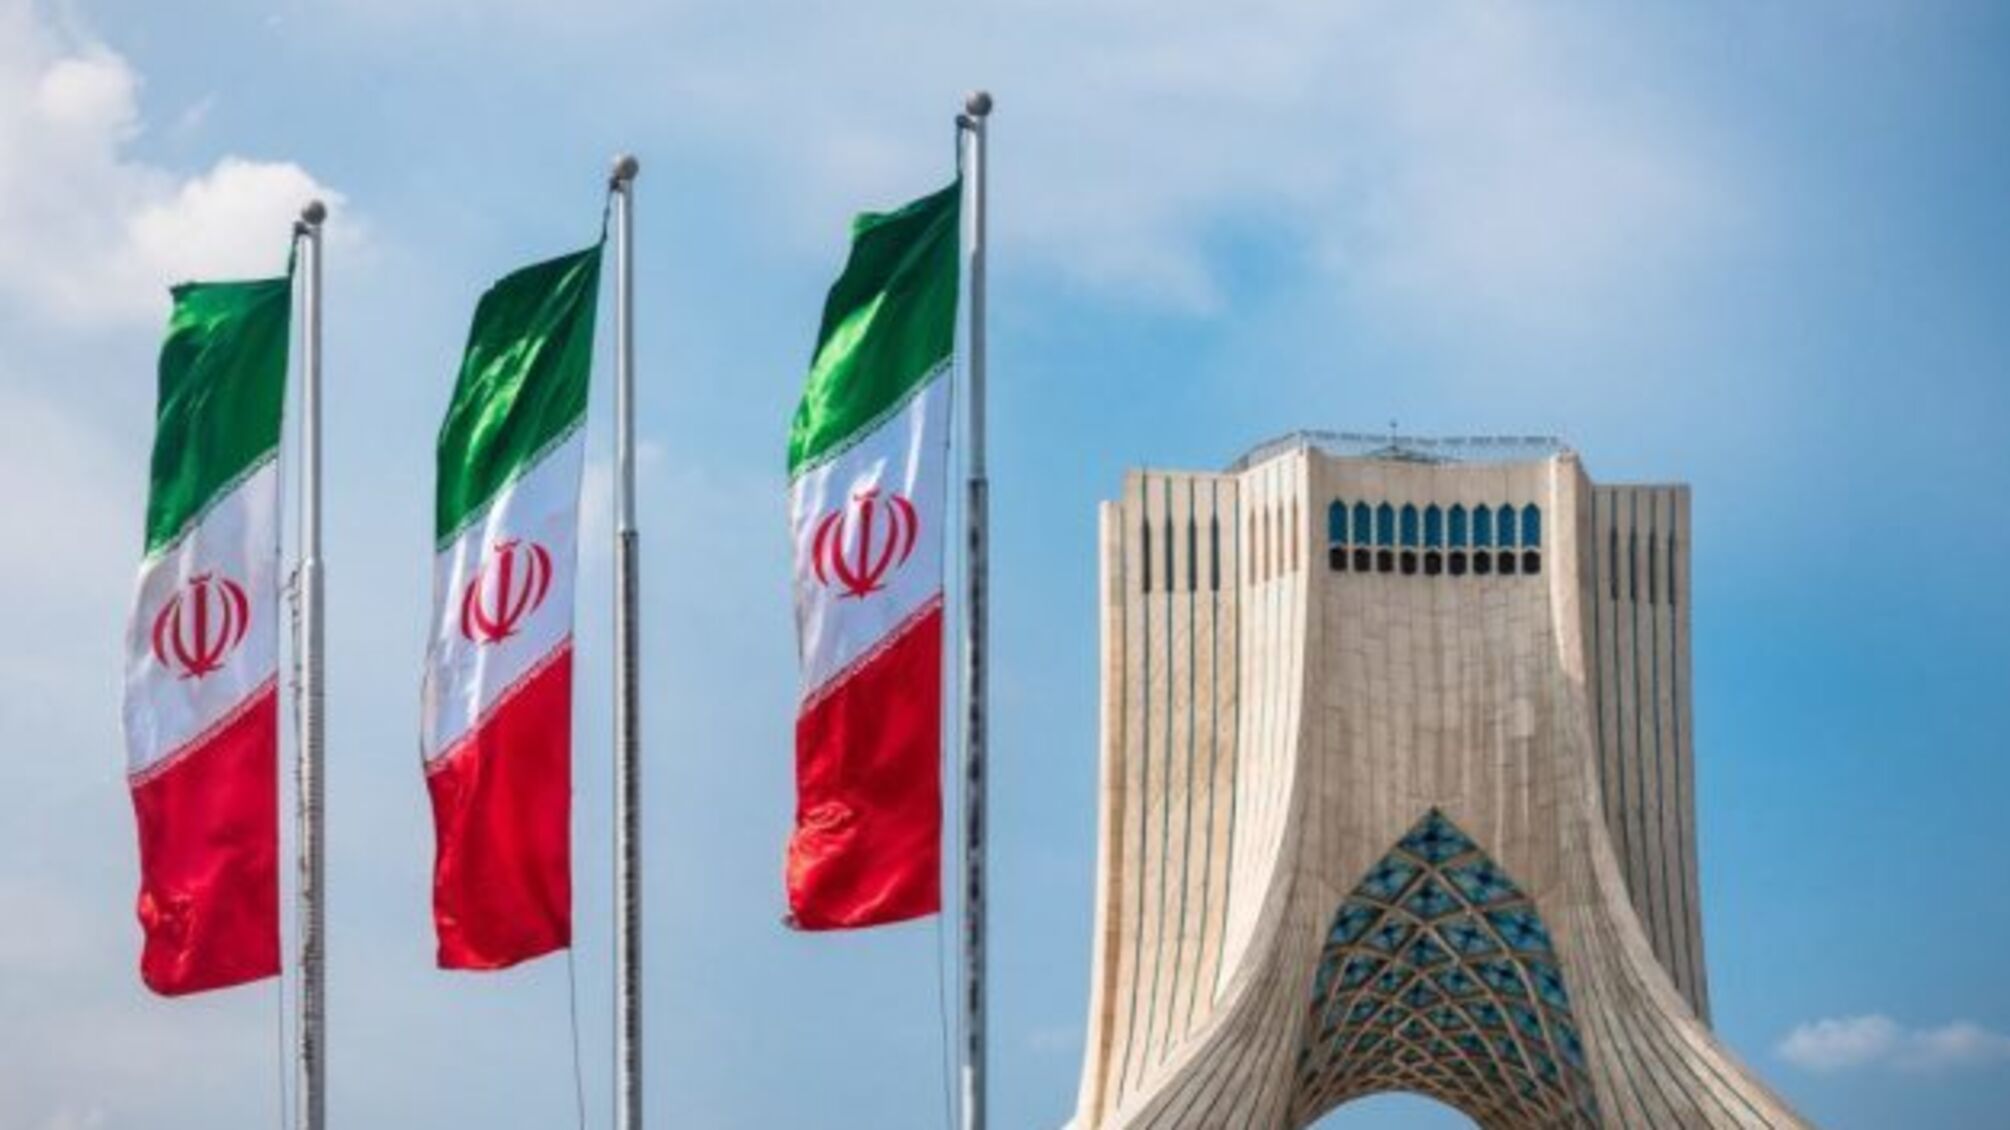 Іран досі не пояснив сліди ядерних матеріалів на незаявлених об’єктах - МАГАТЕ